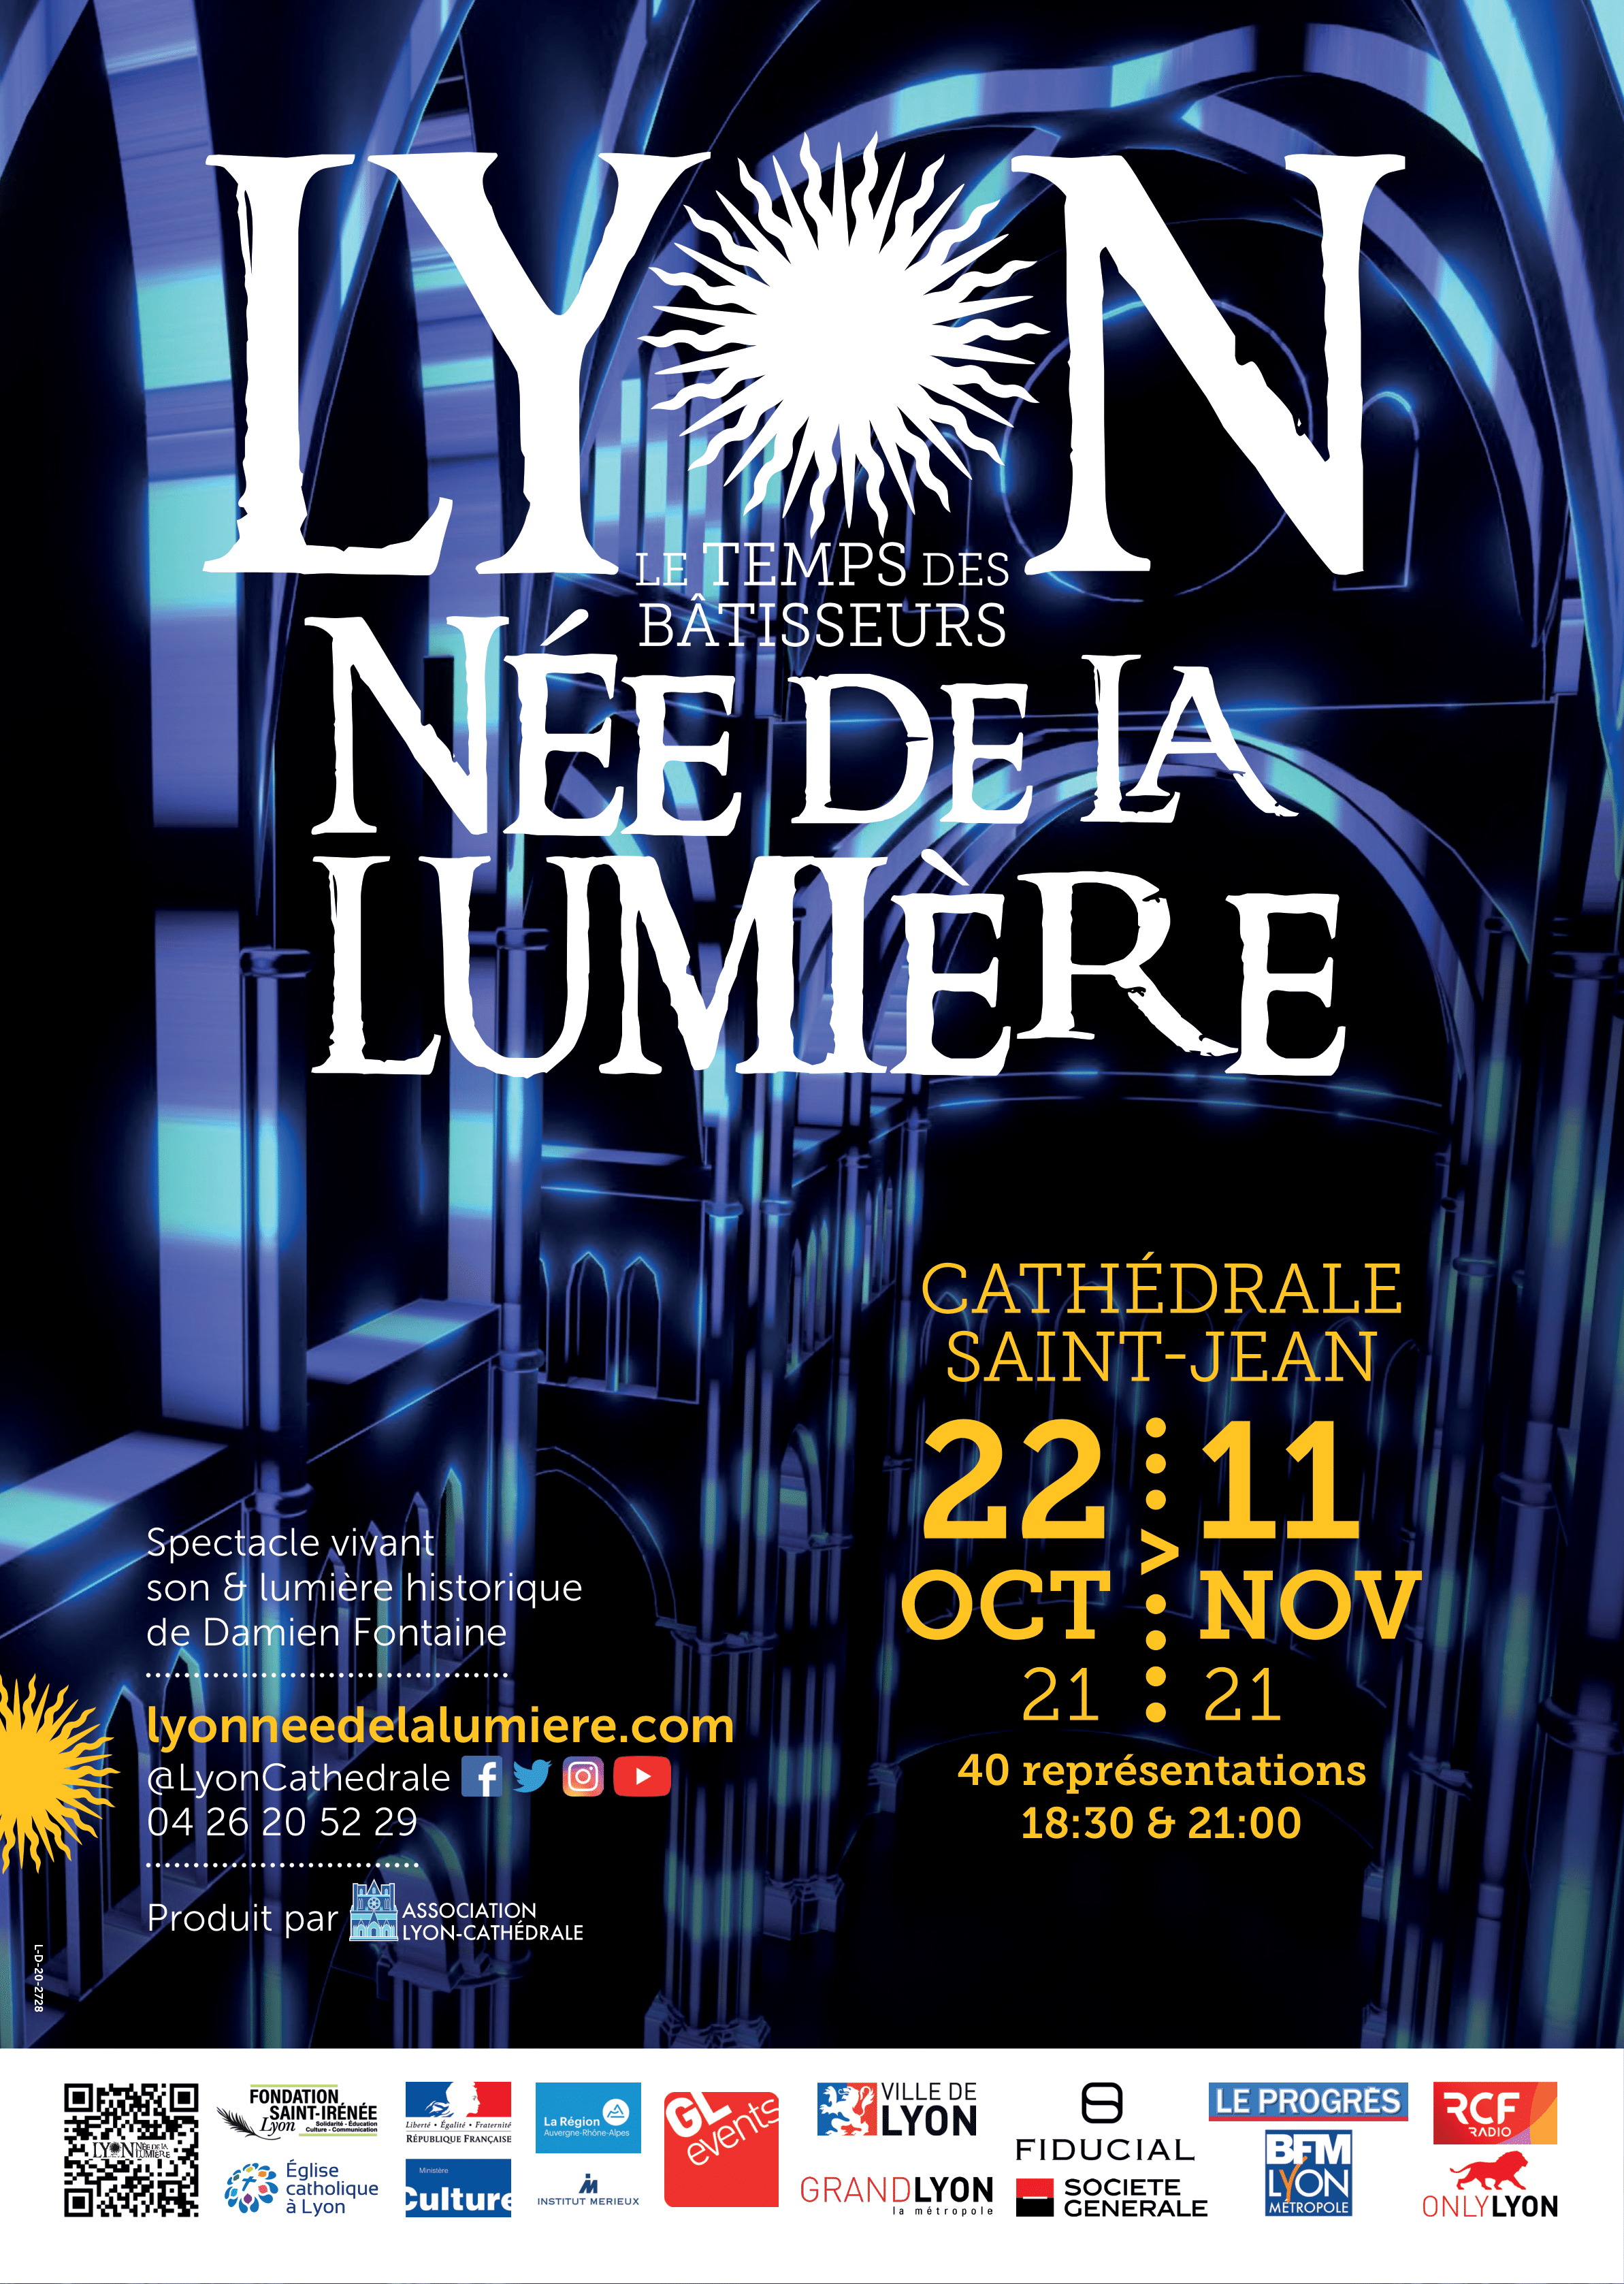 LYON NÉE DE LA LUMIÈRE : spectacle immersif du 22 octobre au 11 novembre